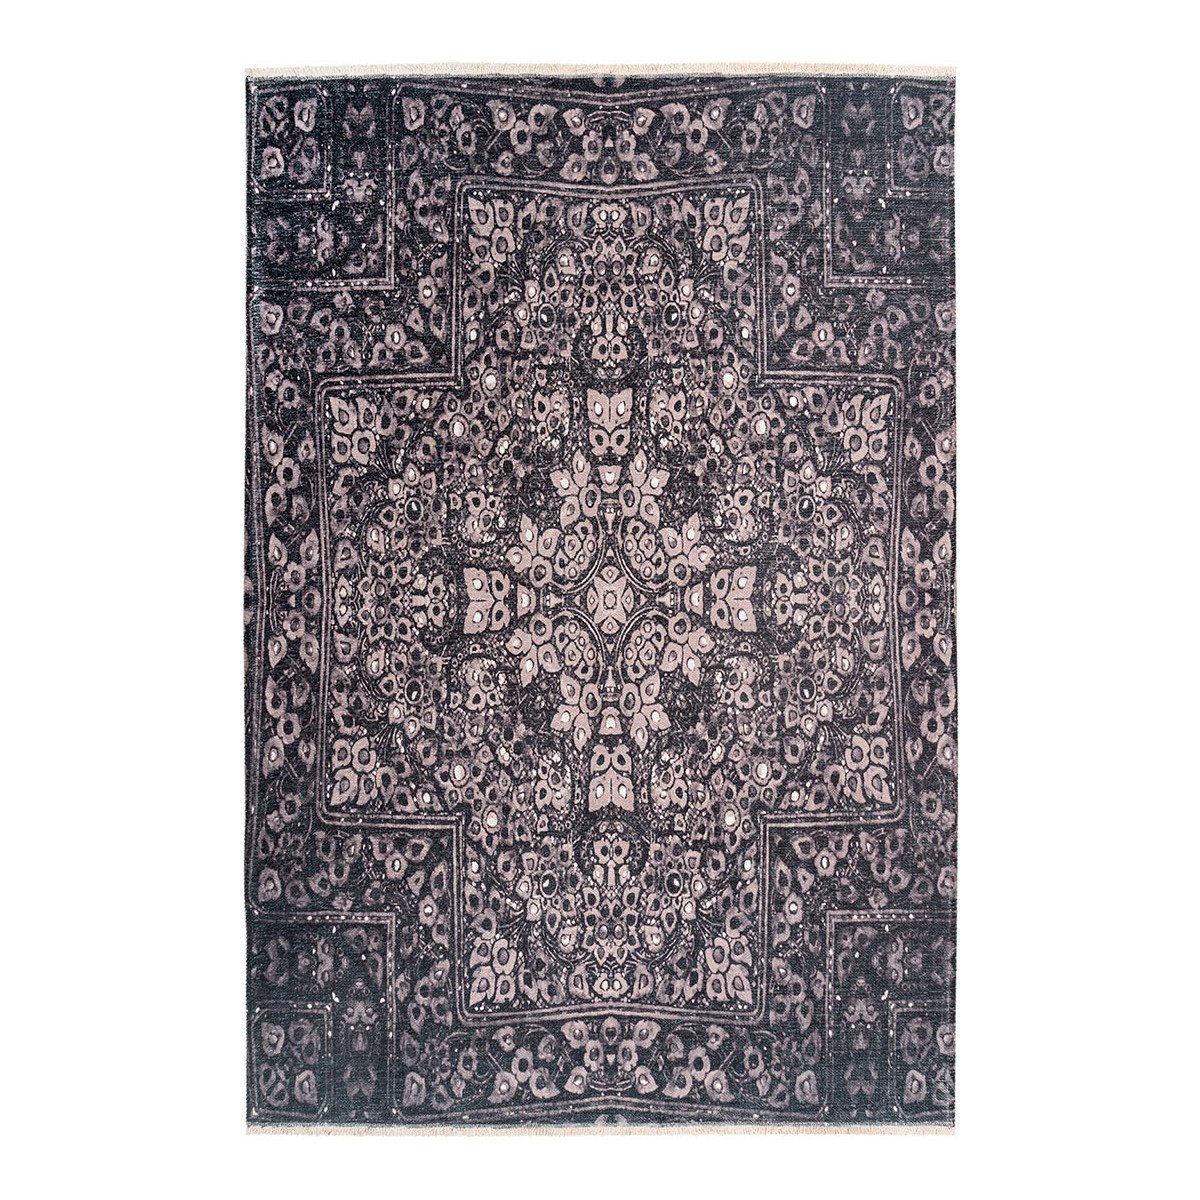 Tapis ethnique en polyester gris 75x150